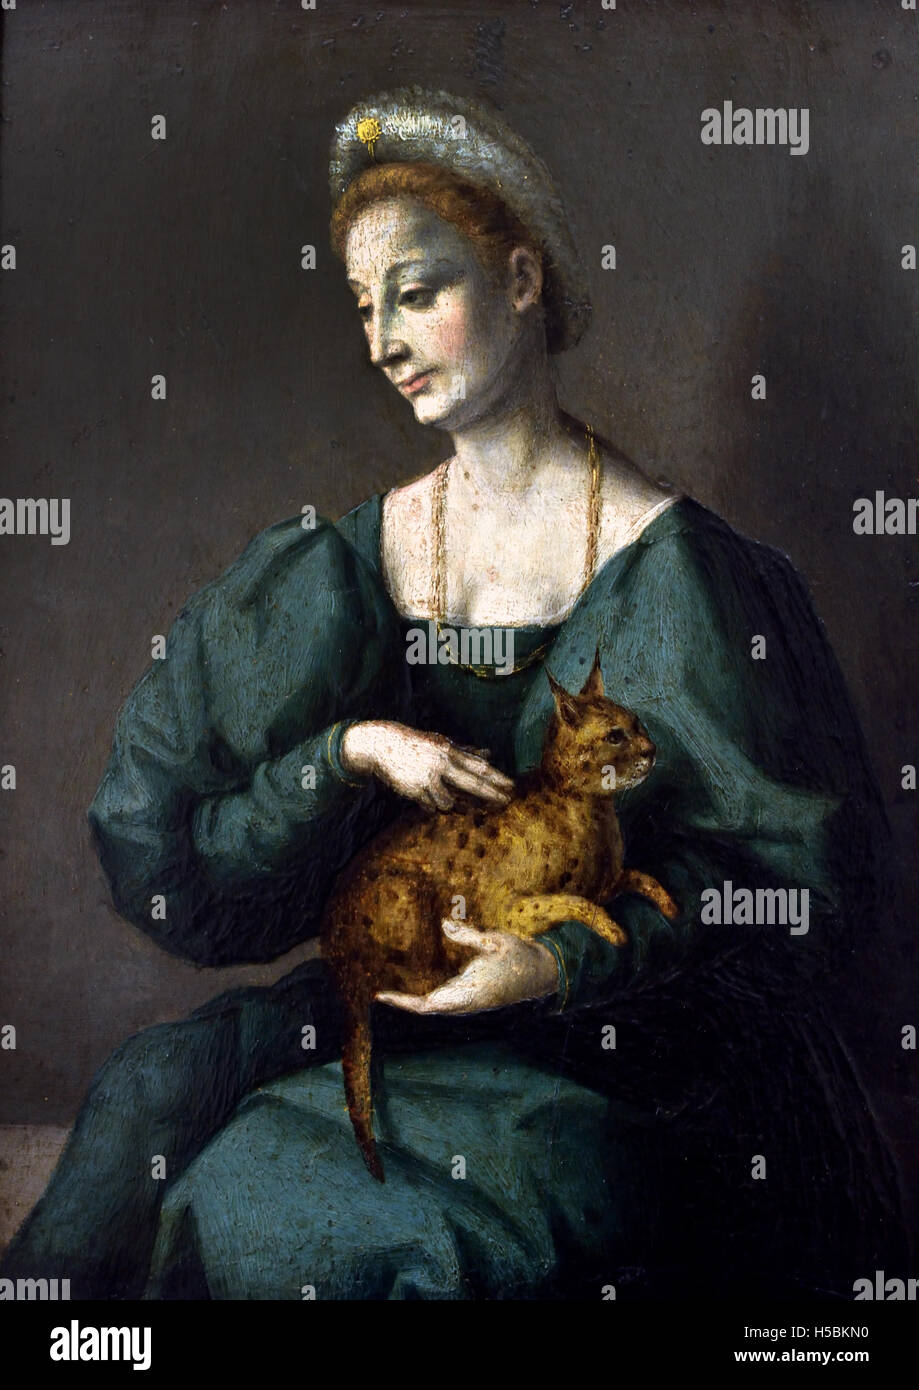 Porträt einer Frau mit einem Panther Katze von Francesco d'Ubertino Verdi - Bachiacca - Francesco Ubertini (1494-1557), italienischer Maler der Renaissance, dessen Werk charakteristisch für den Florentiner Manierismus-Stil ist. Italien Stockfoto